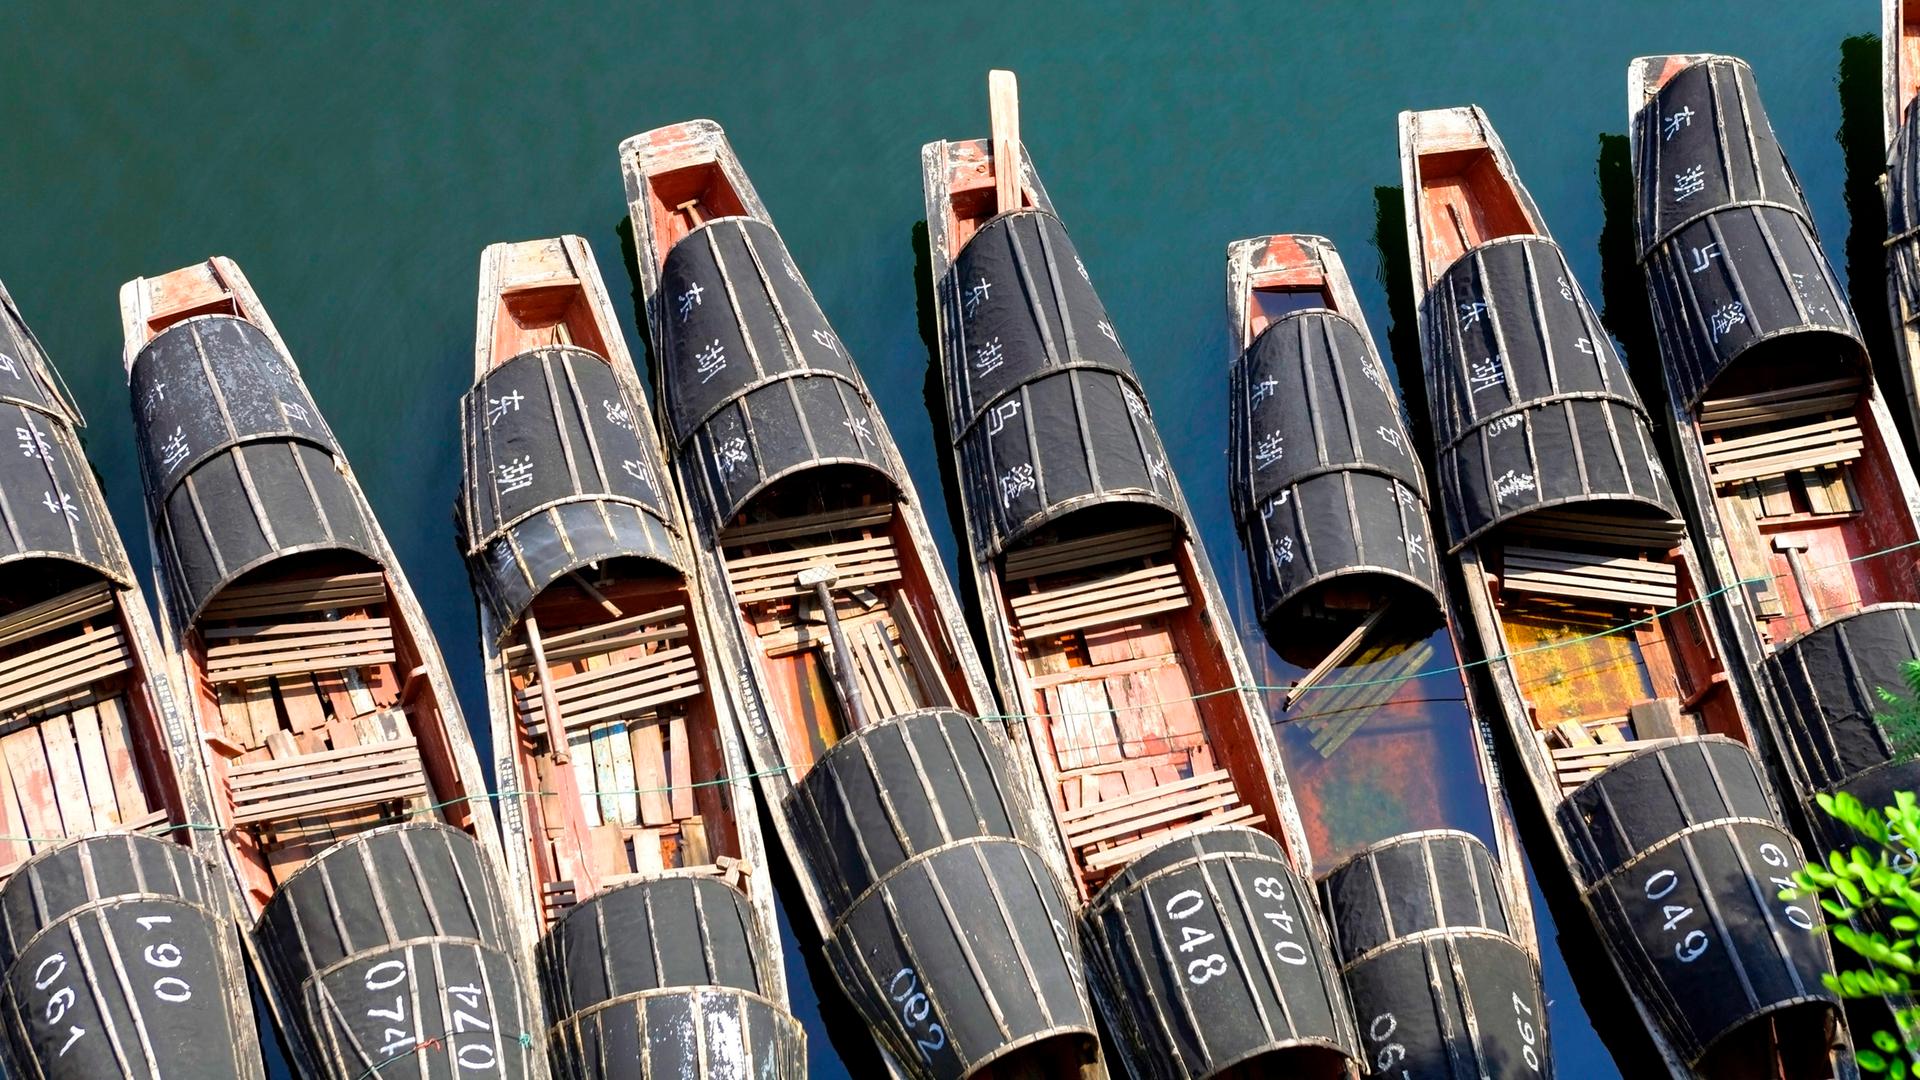 Vogelperspektive auf traditionelle chinesische Boote im Wasser